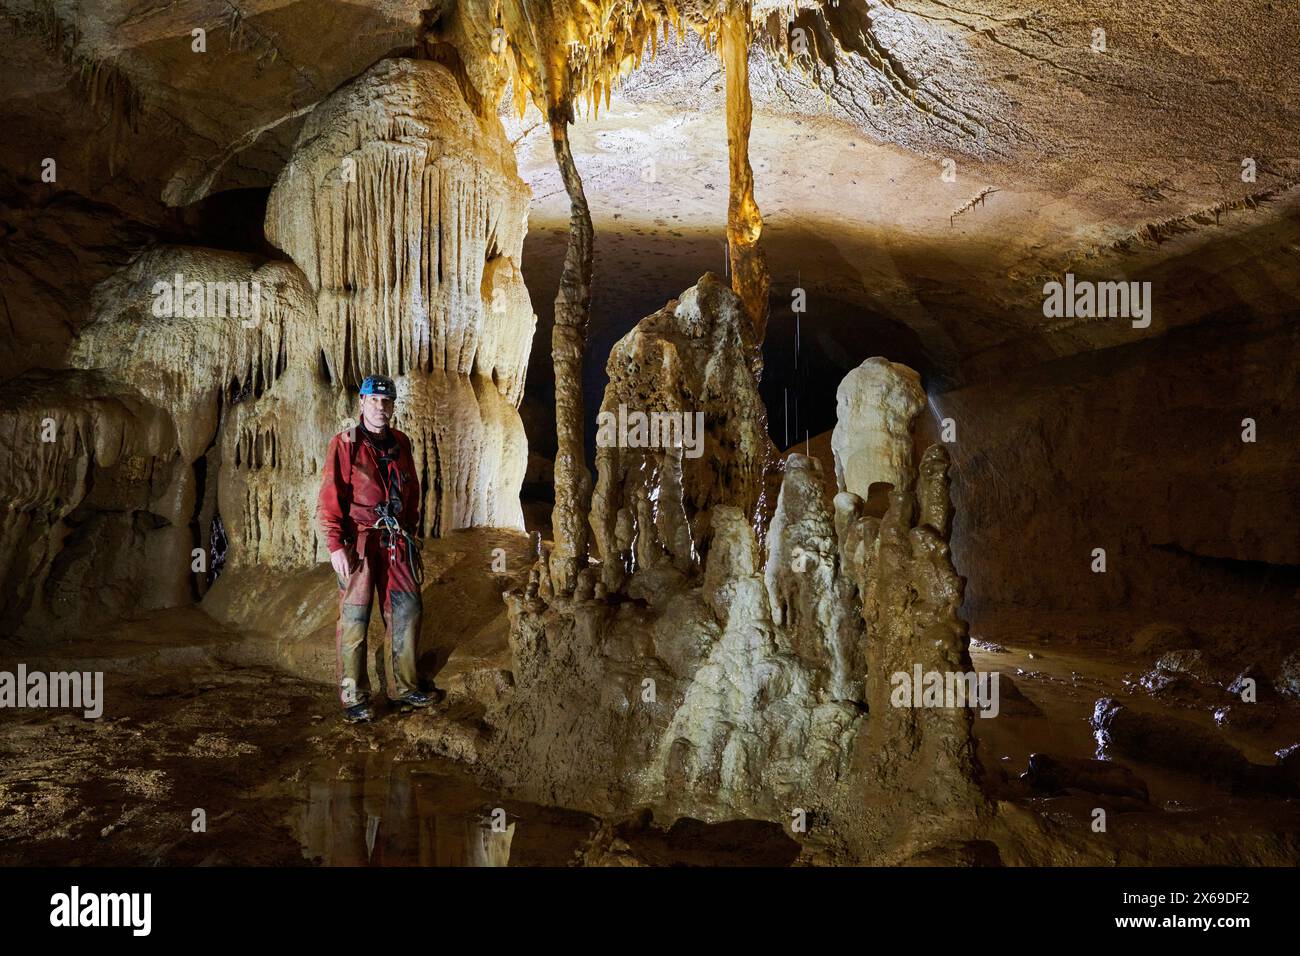 Speläologe in einer Höhle, Wassertropfen fallen von der Decke Stockfoto